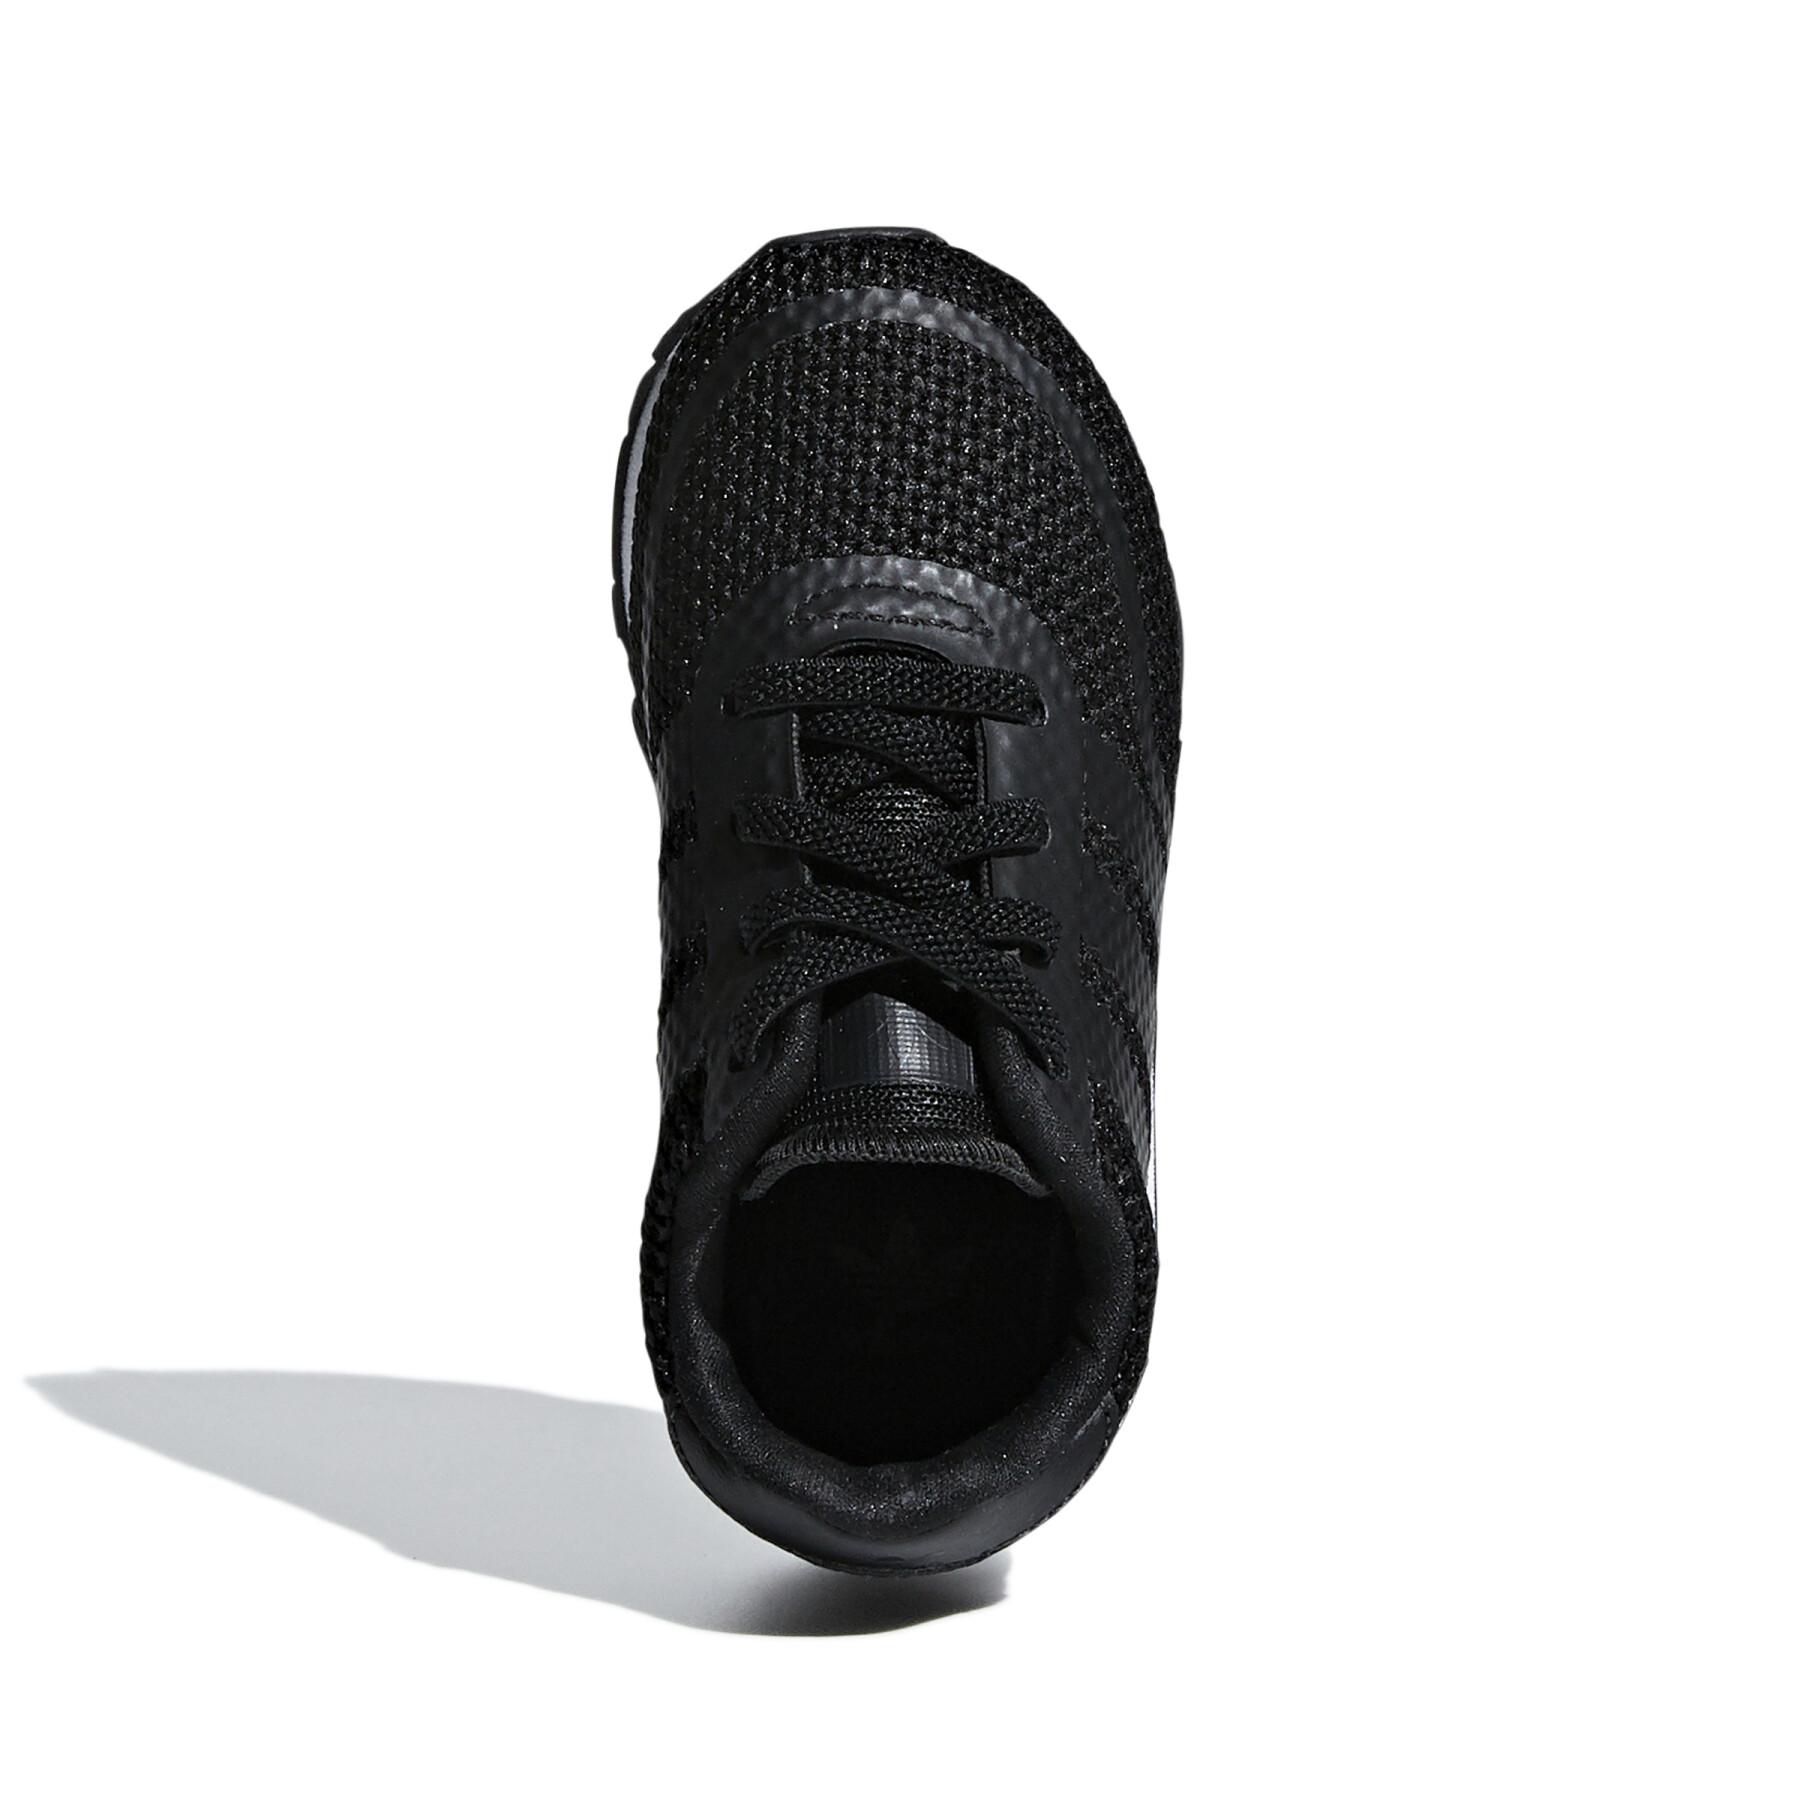 Baby sneakers adidas N-5923